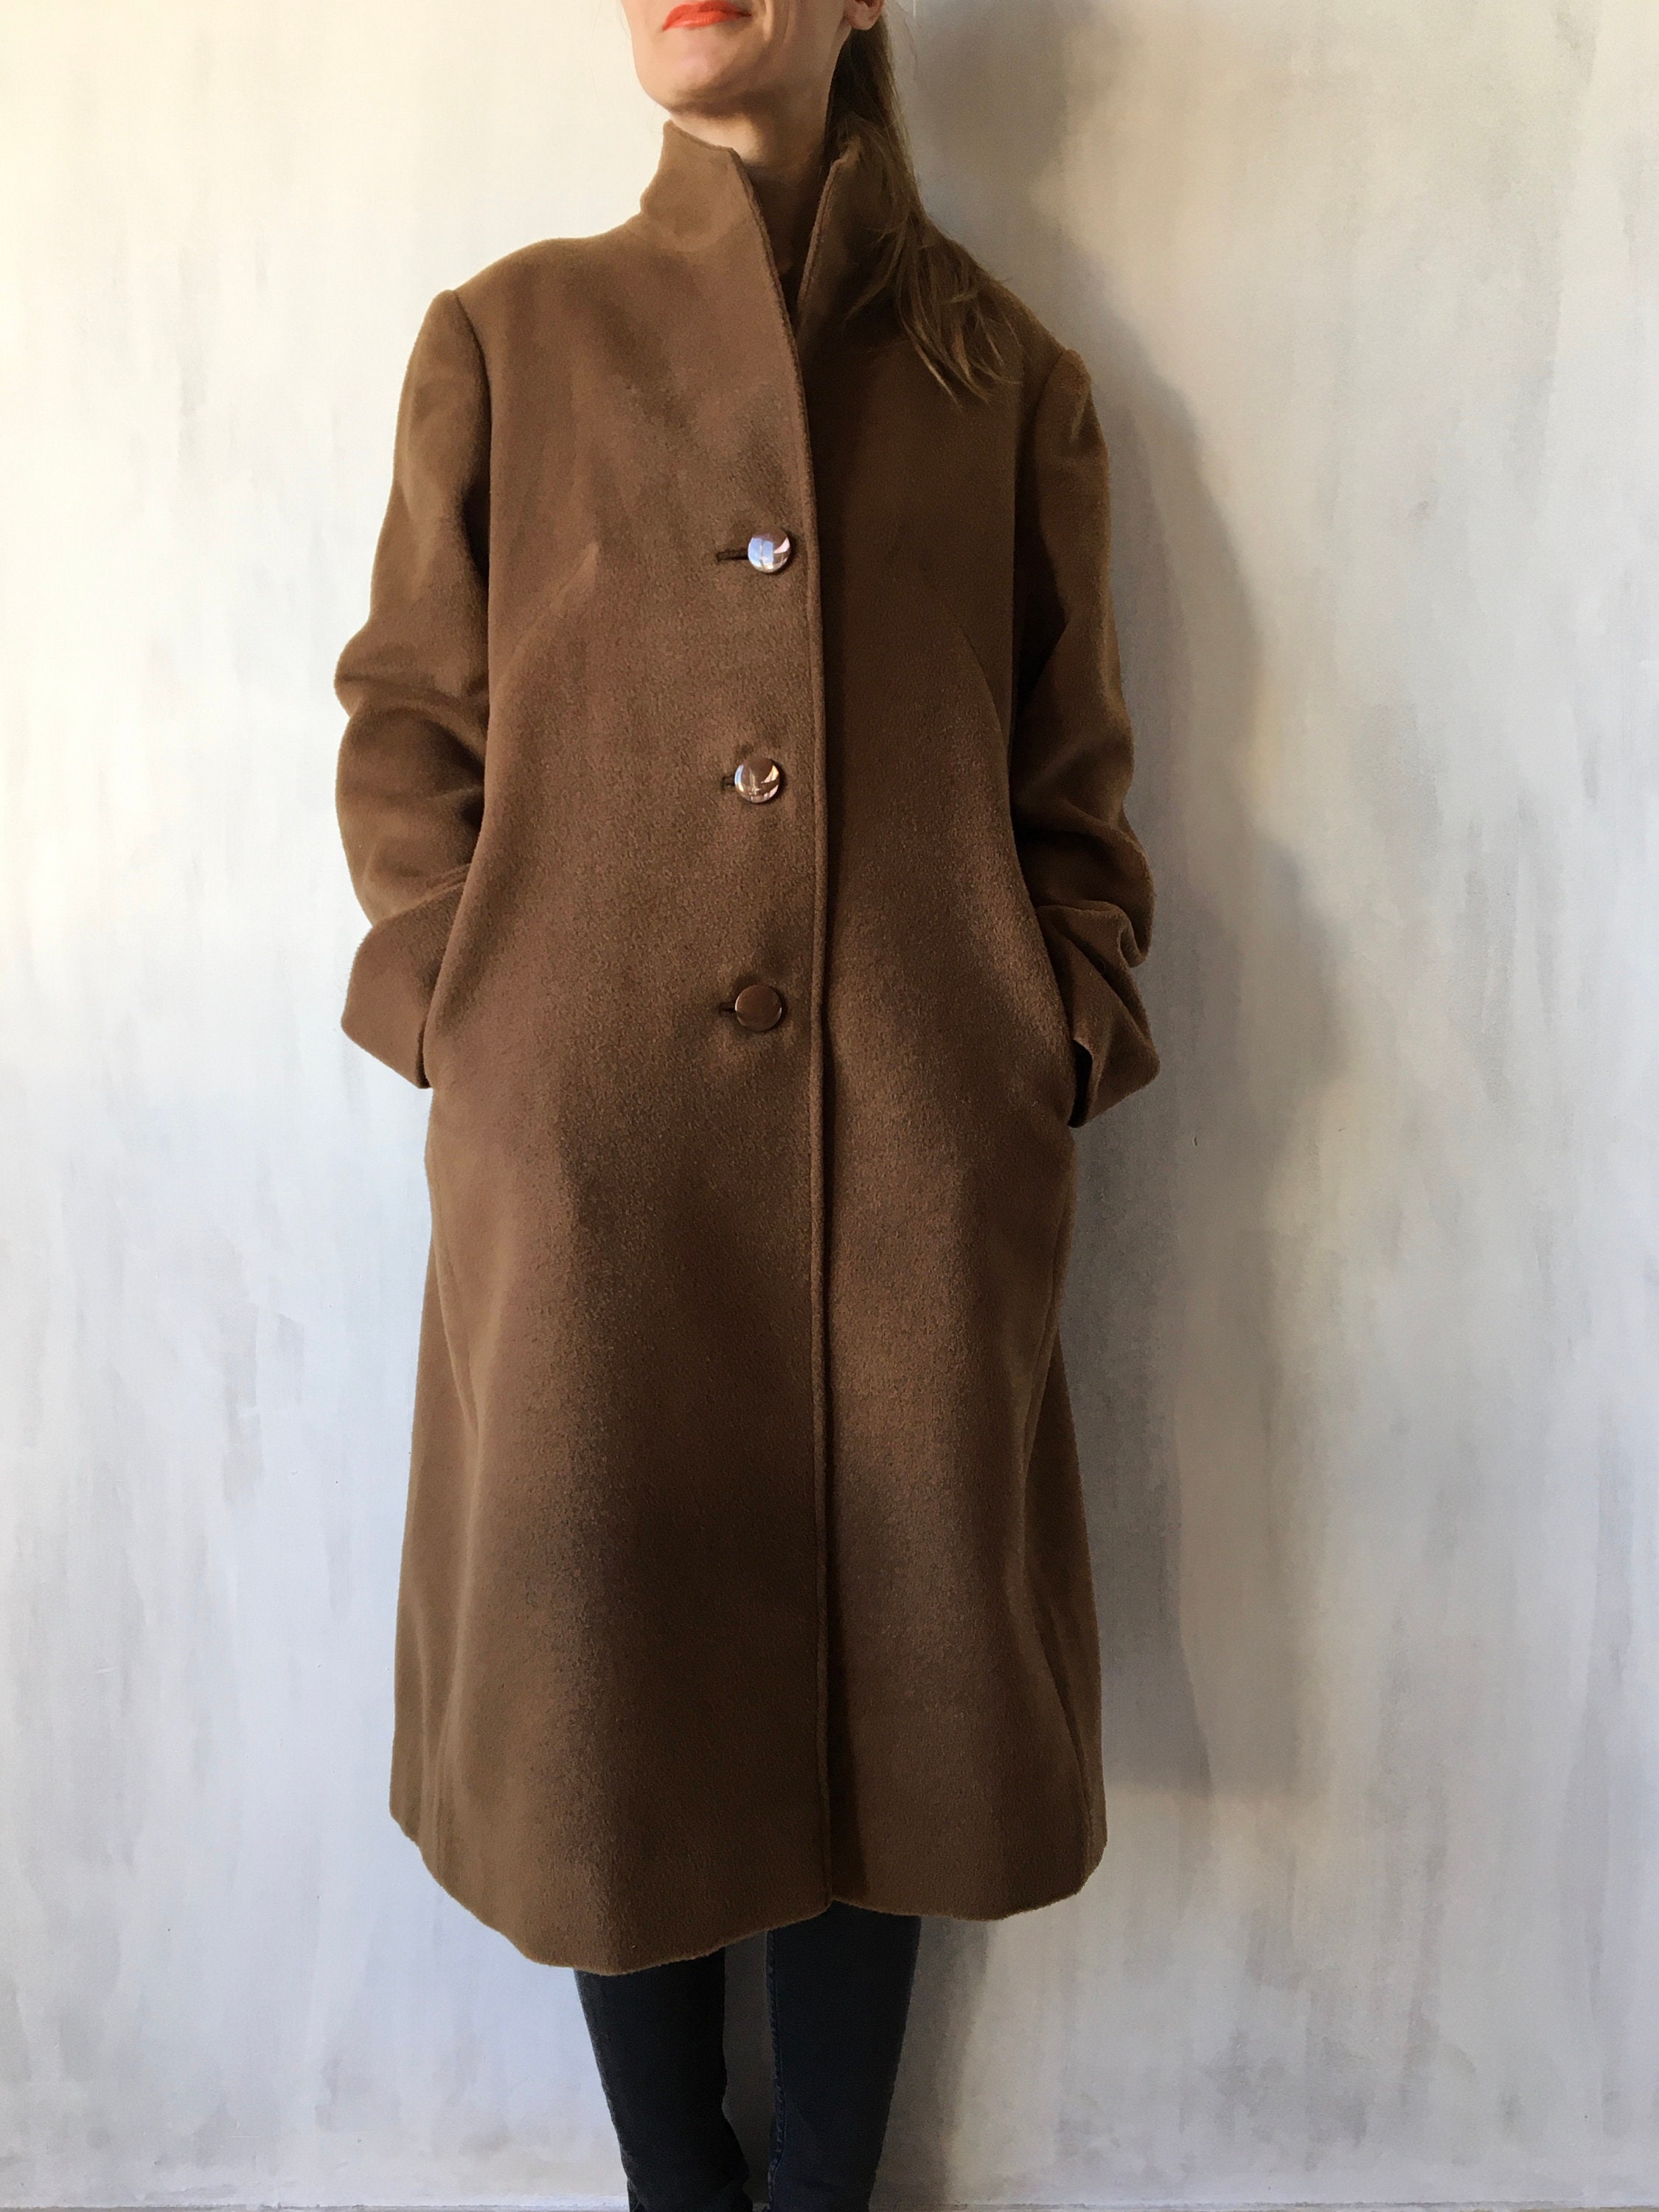 Vintage Wool Cashmere Blend Long Warm Coat, Classic Overcoat, Fits Best-S-M-L